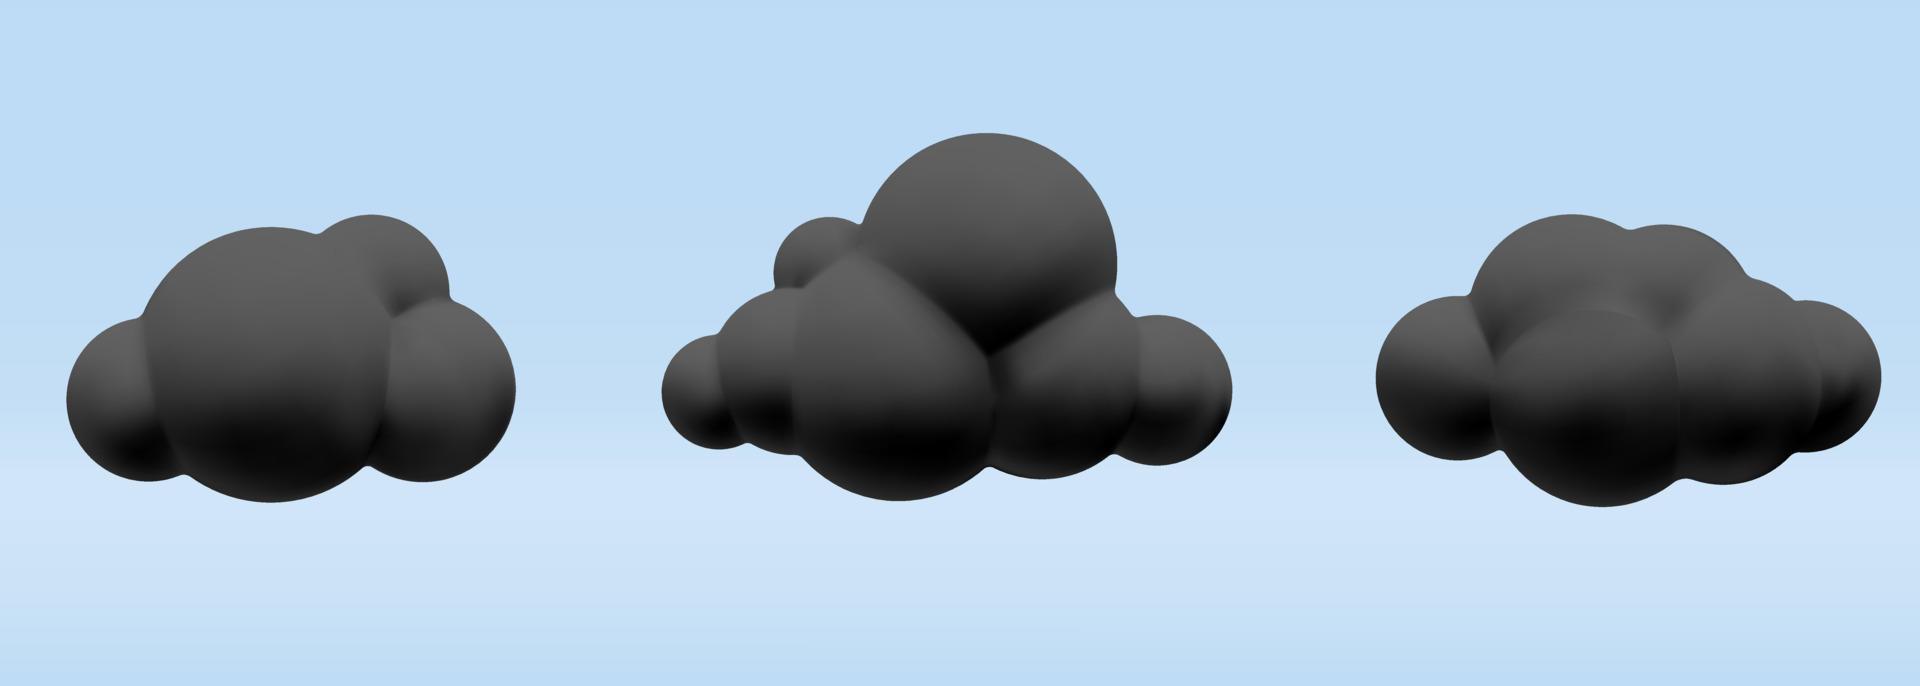 conjunto de vetores 3d de desenhos animados render ilustração de design de nuvens escuras pretas fofas